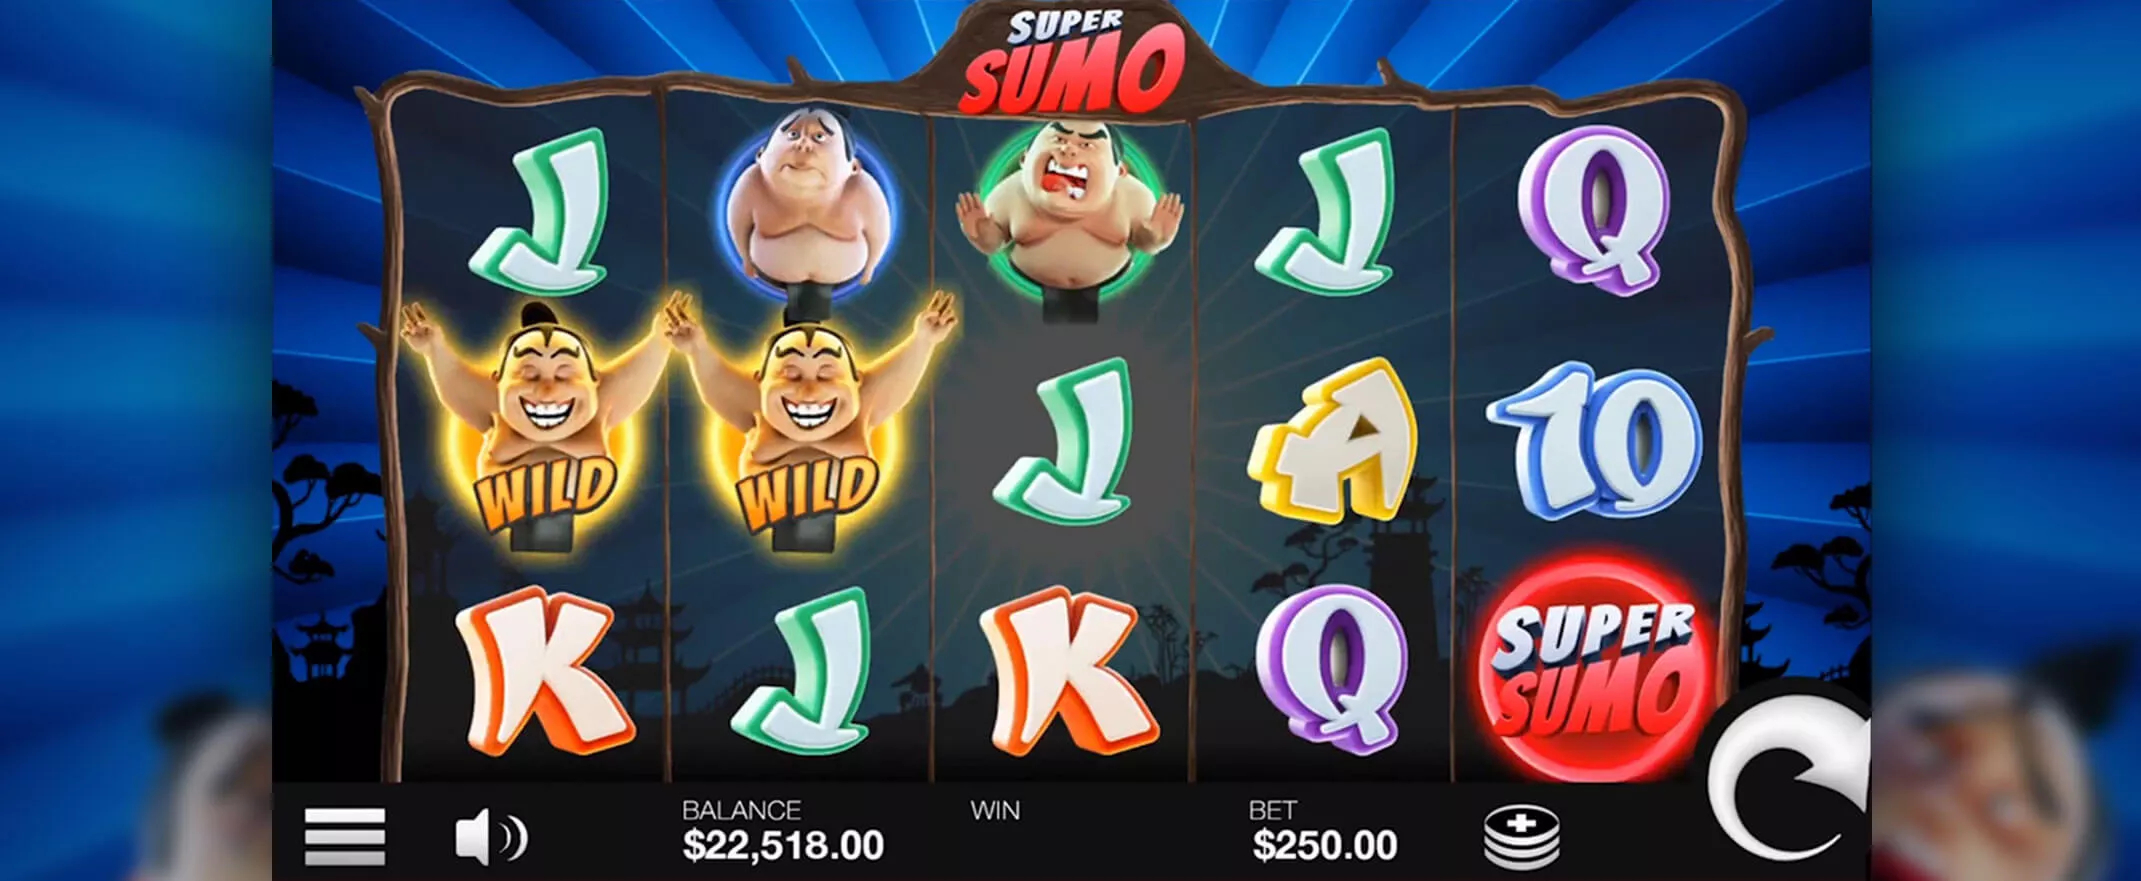 Super Sumo Slot Screenshot